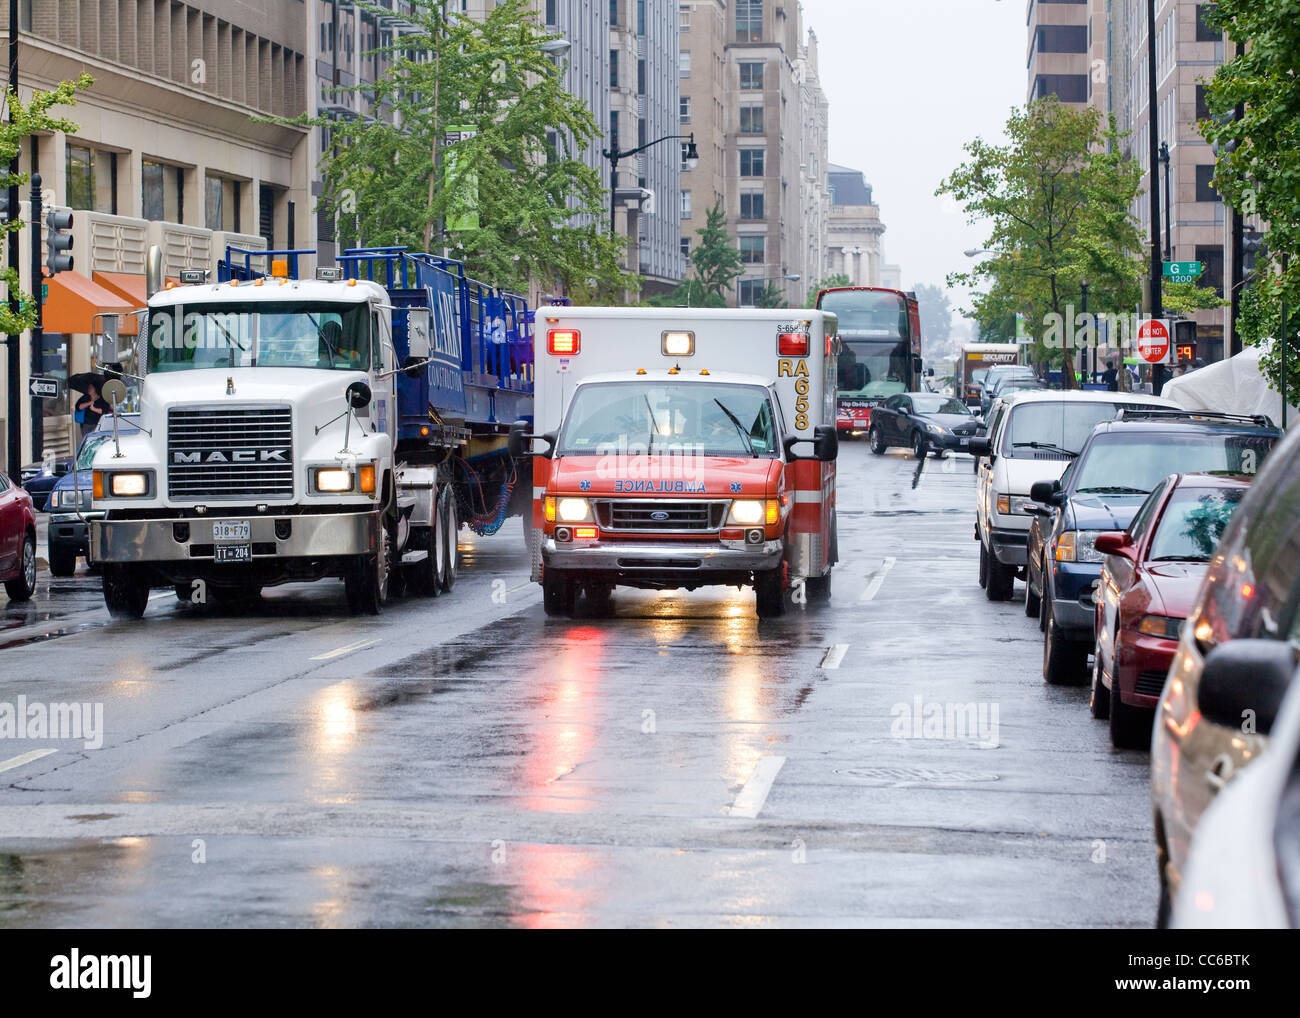 Un ambulanza racing giù per una strada di città in un giorno di pioggia - Washington DC, Stati Uniti d'America Foto Stock